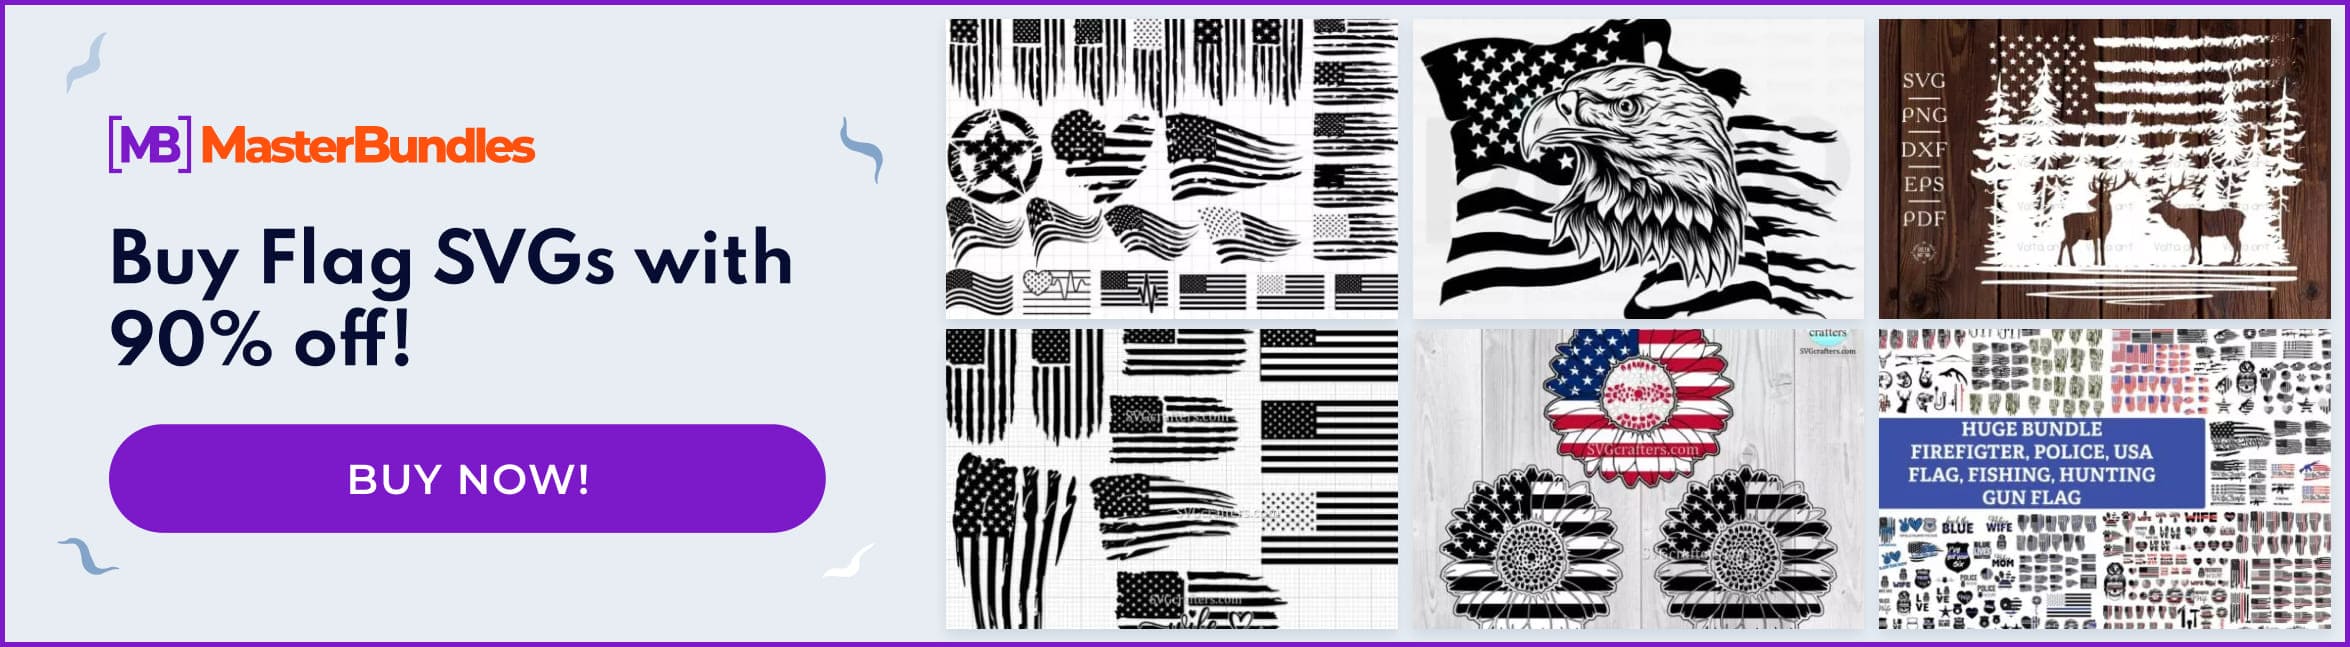 Banner for Flag SVG Images.